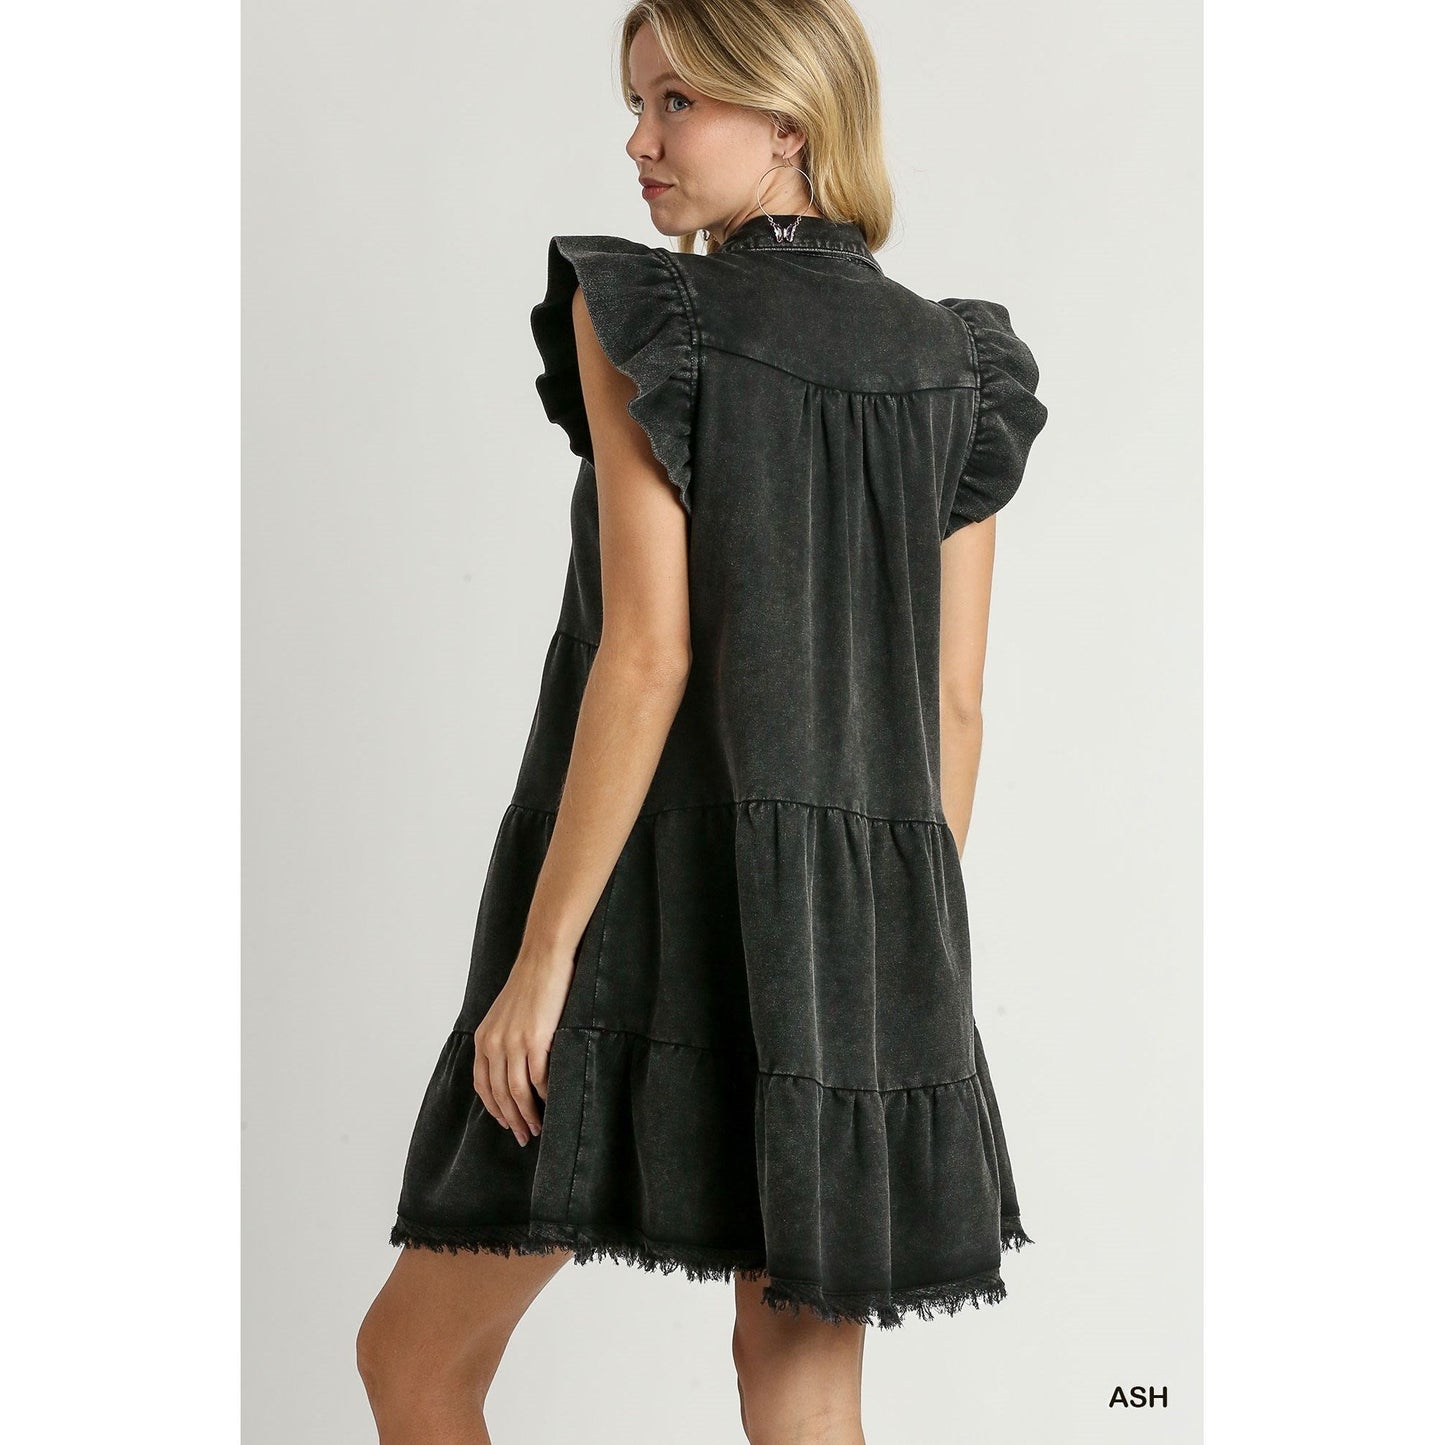 Ash Balck French Terry V Neck Flutter Sleeve Mini Dress